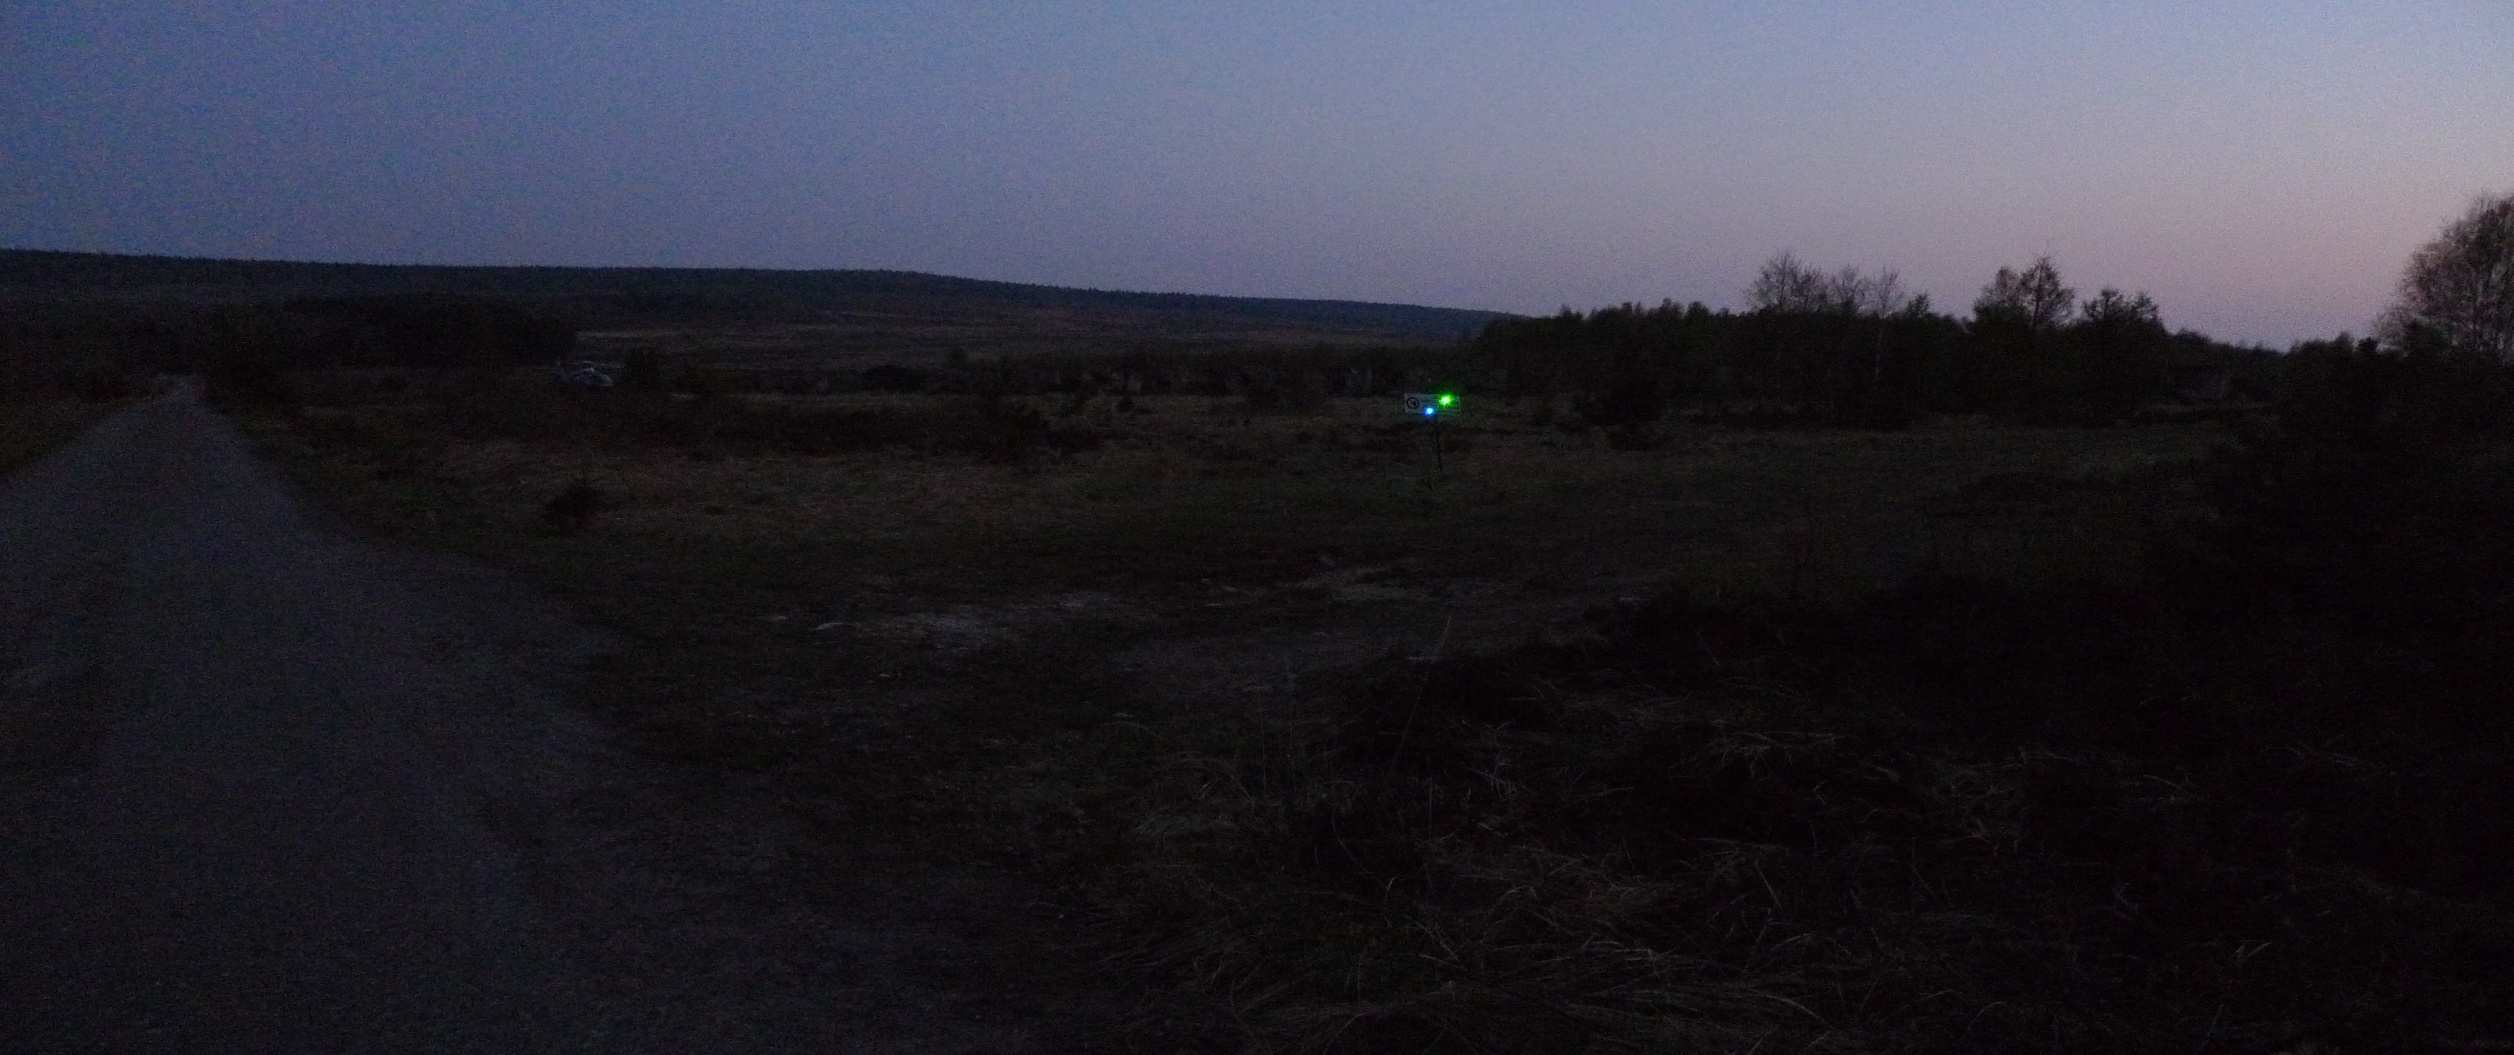 Obr.22 Pohled do svazku laserového paprsku na vzdálenost cca 500m přes přední sklo osobního automobilu za denního světla Noční část pokusu Noční část pokus probíhala od 20:00 do 23:00 hodin.